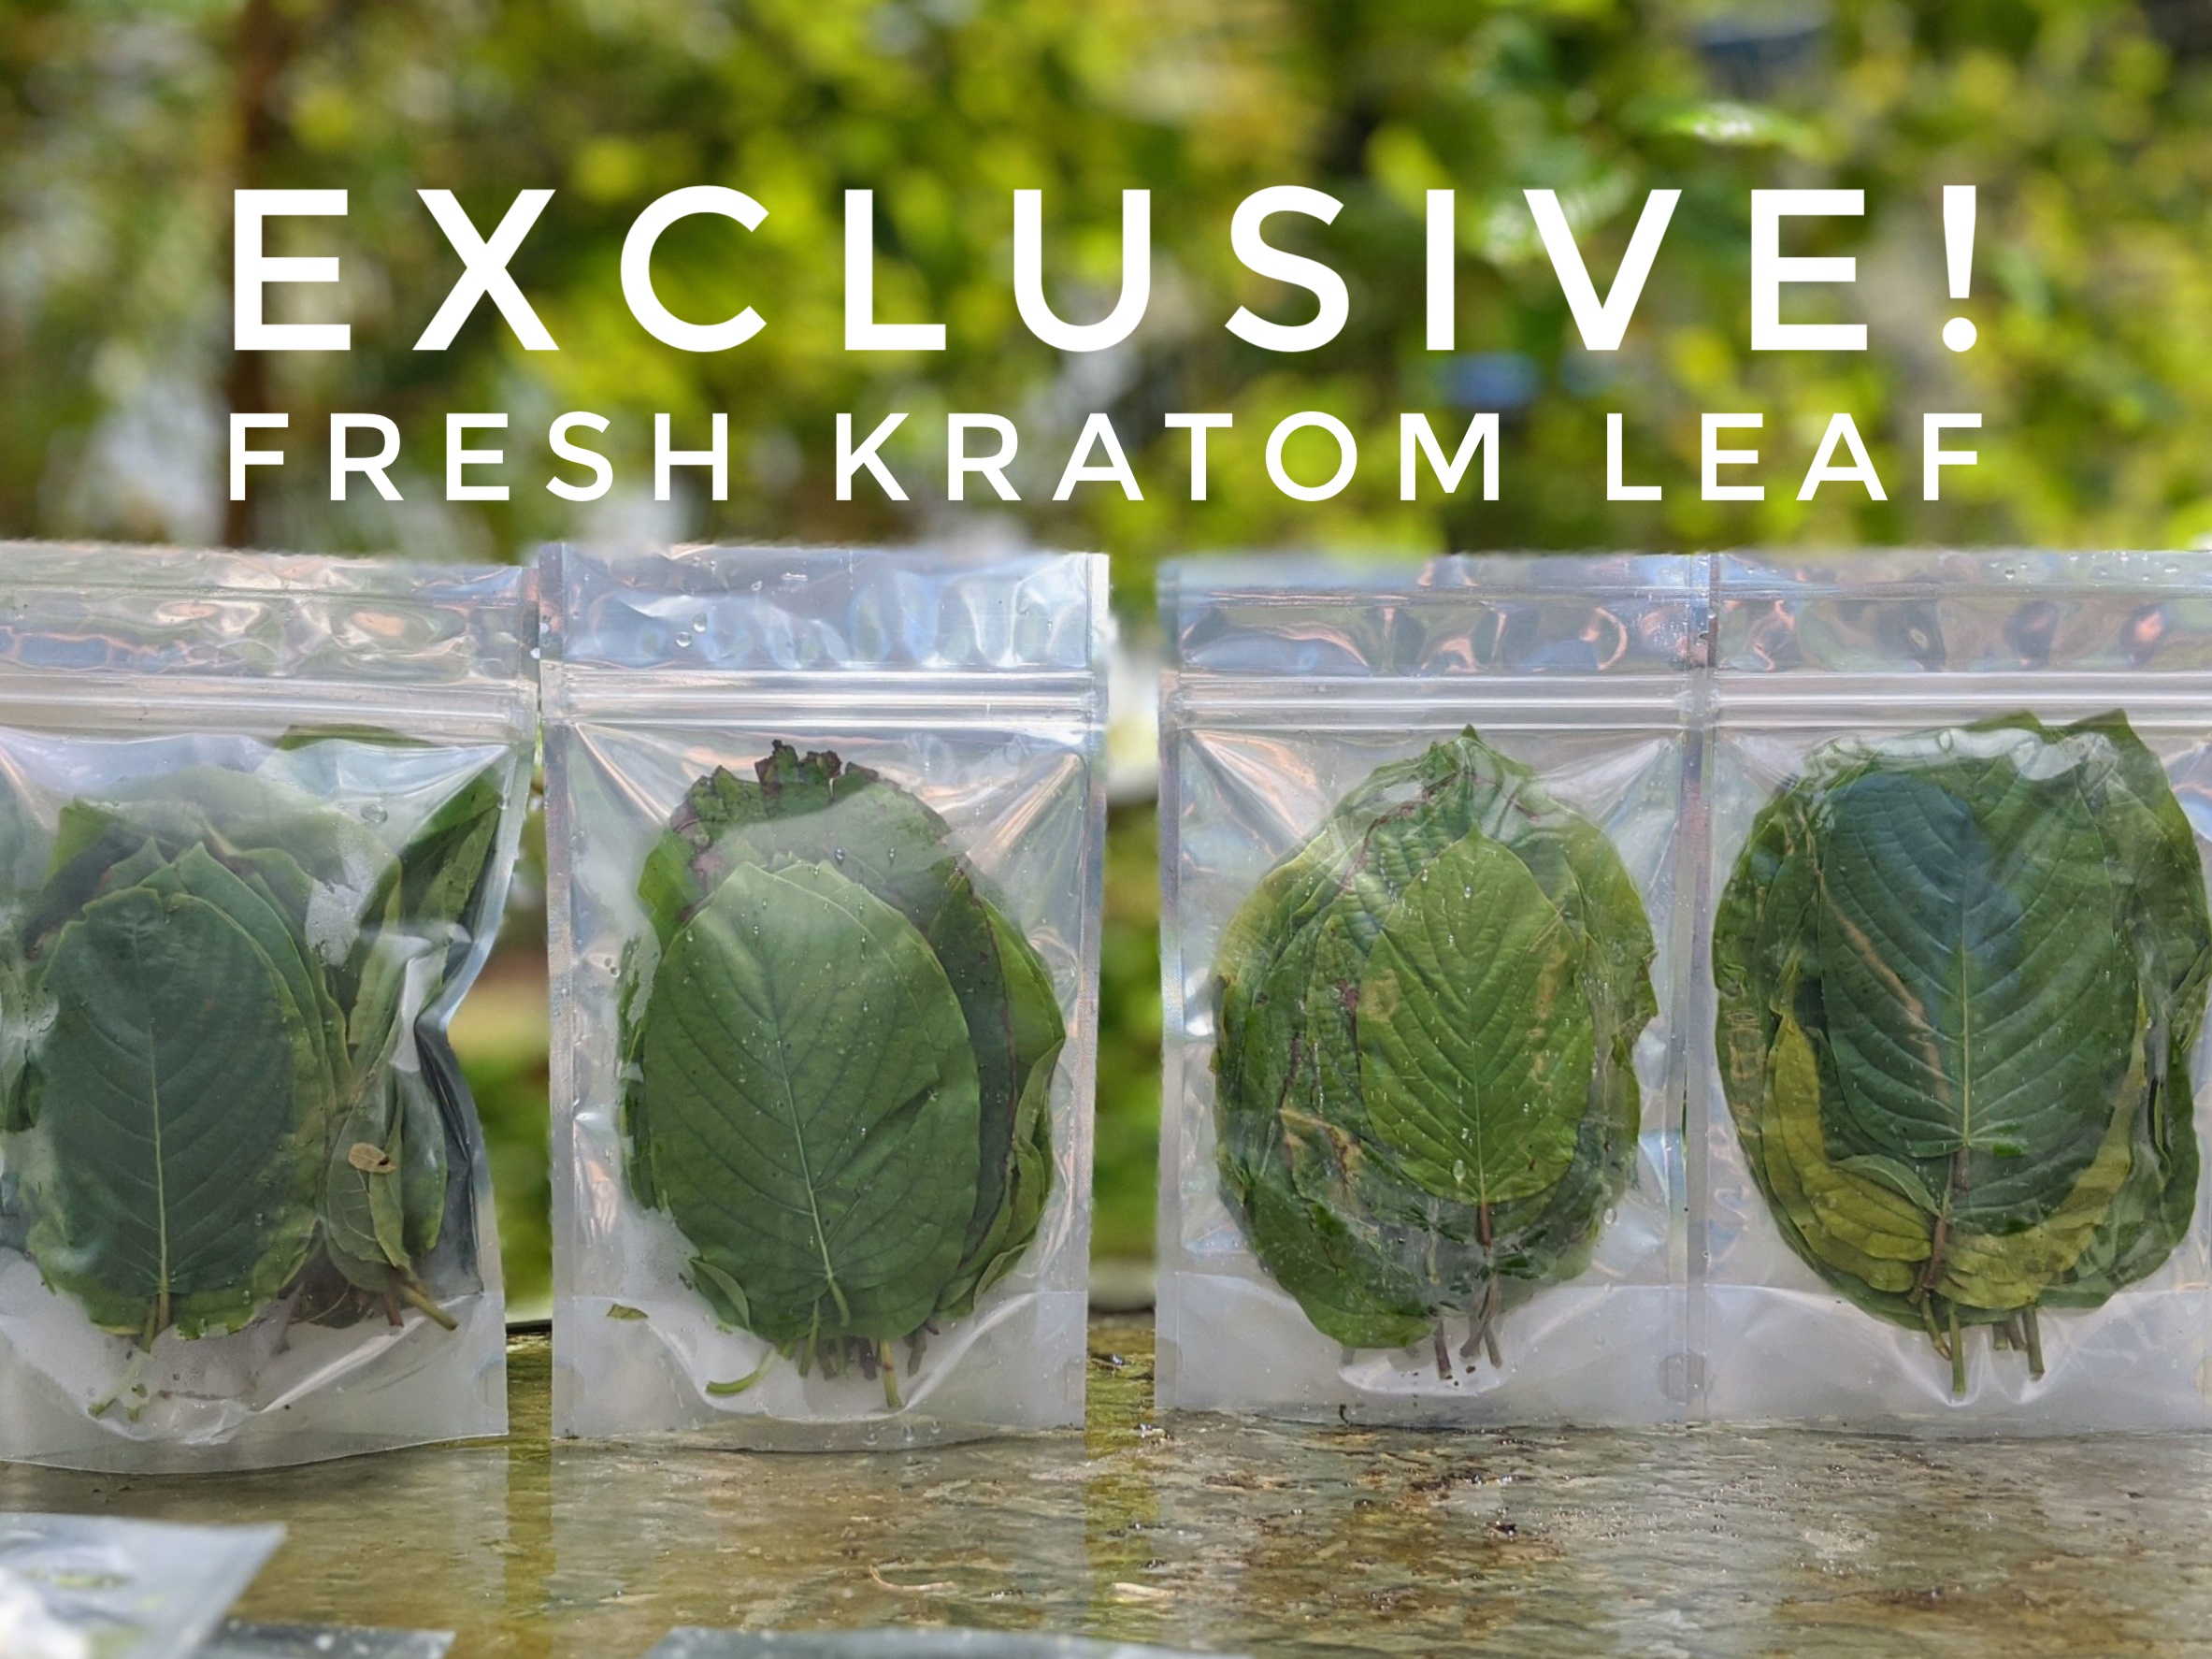 Exclusive American Kratom Leaf Promo